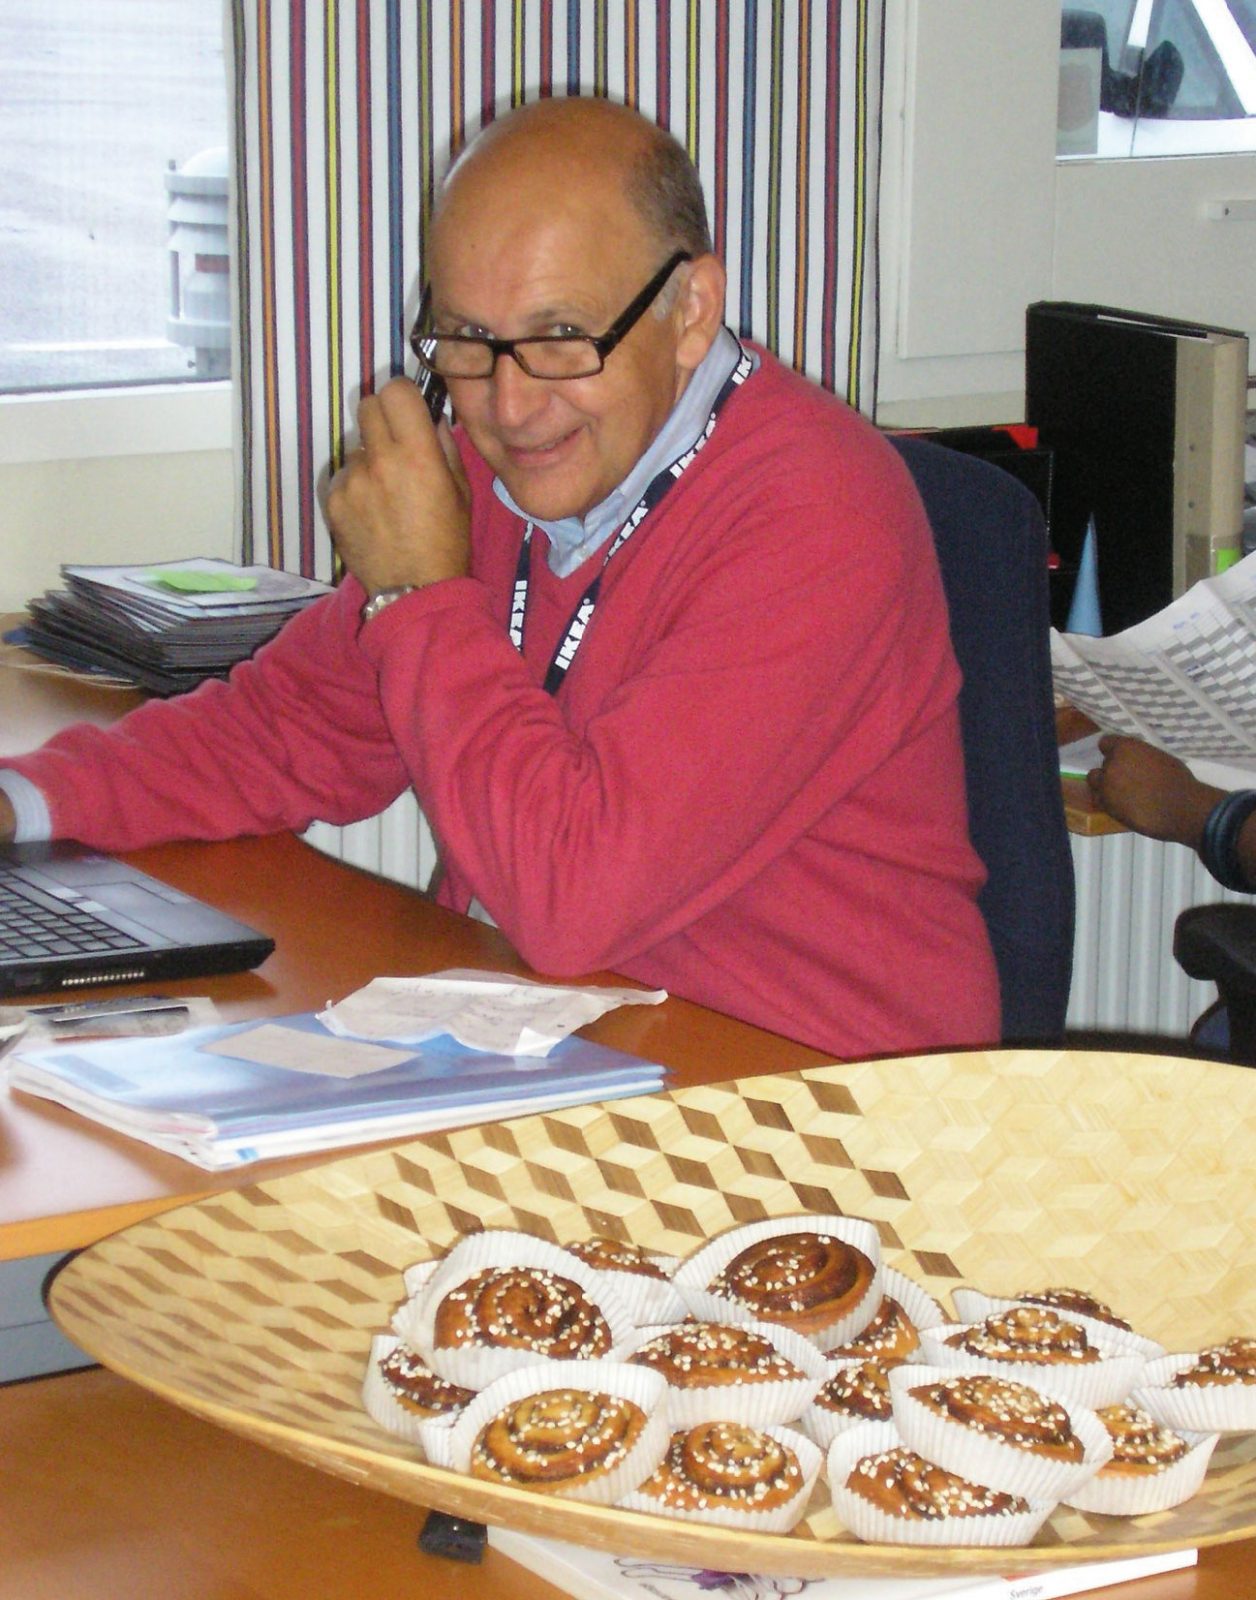 Mann mit Brille und rotem Pullover, Mats Agmén, telefoniert am Schreibtisch. Im Vordergrund ein Korb mit Zimtschnecken.